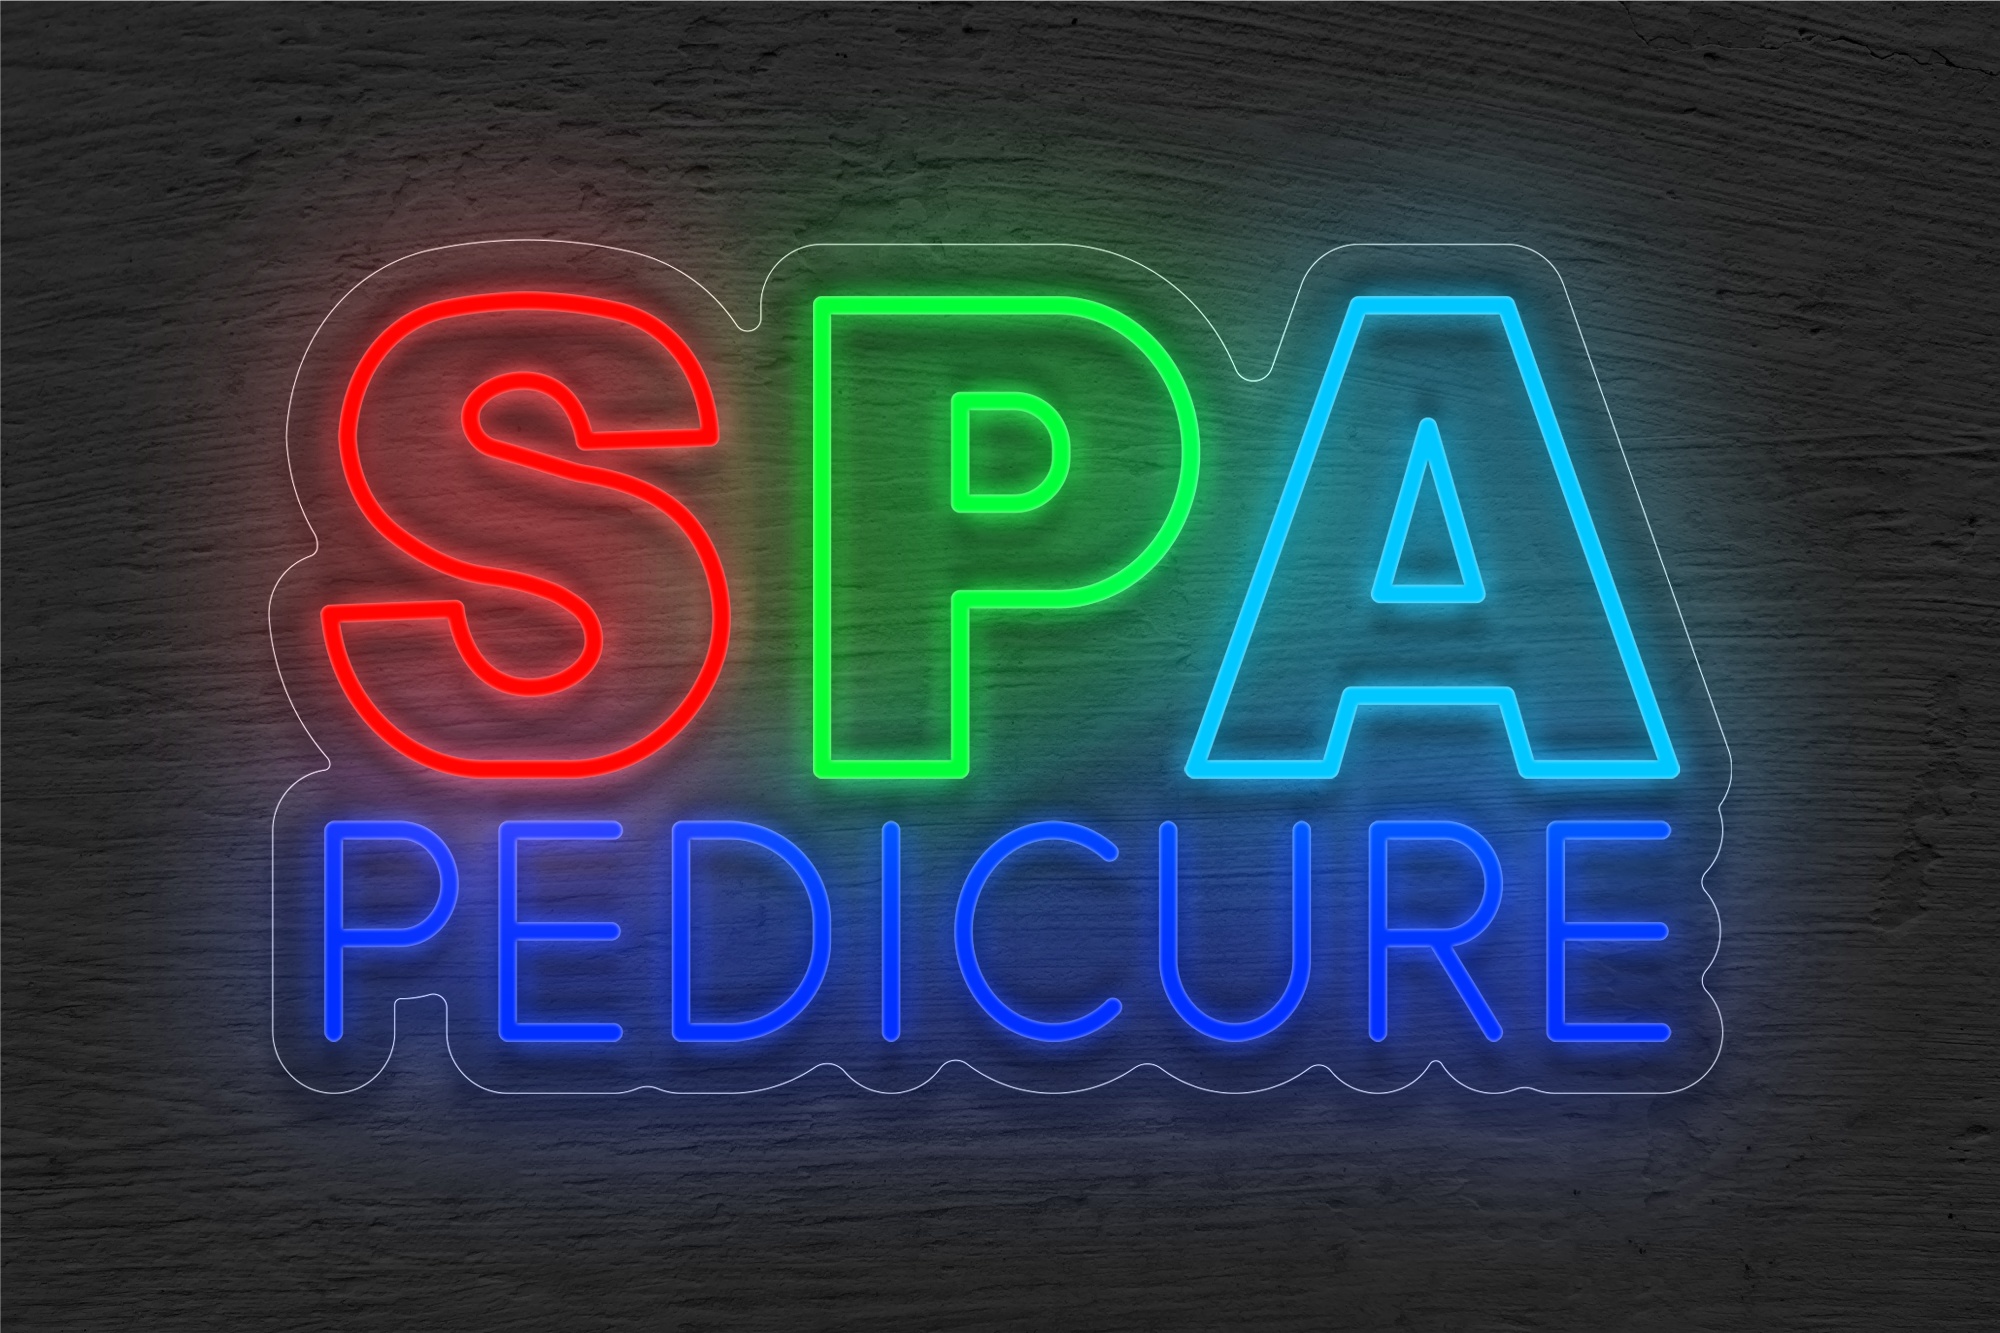 Multi-color "SPA Pedicure" LED Neon Sign